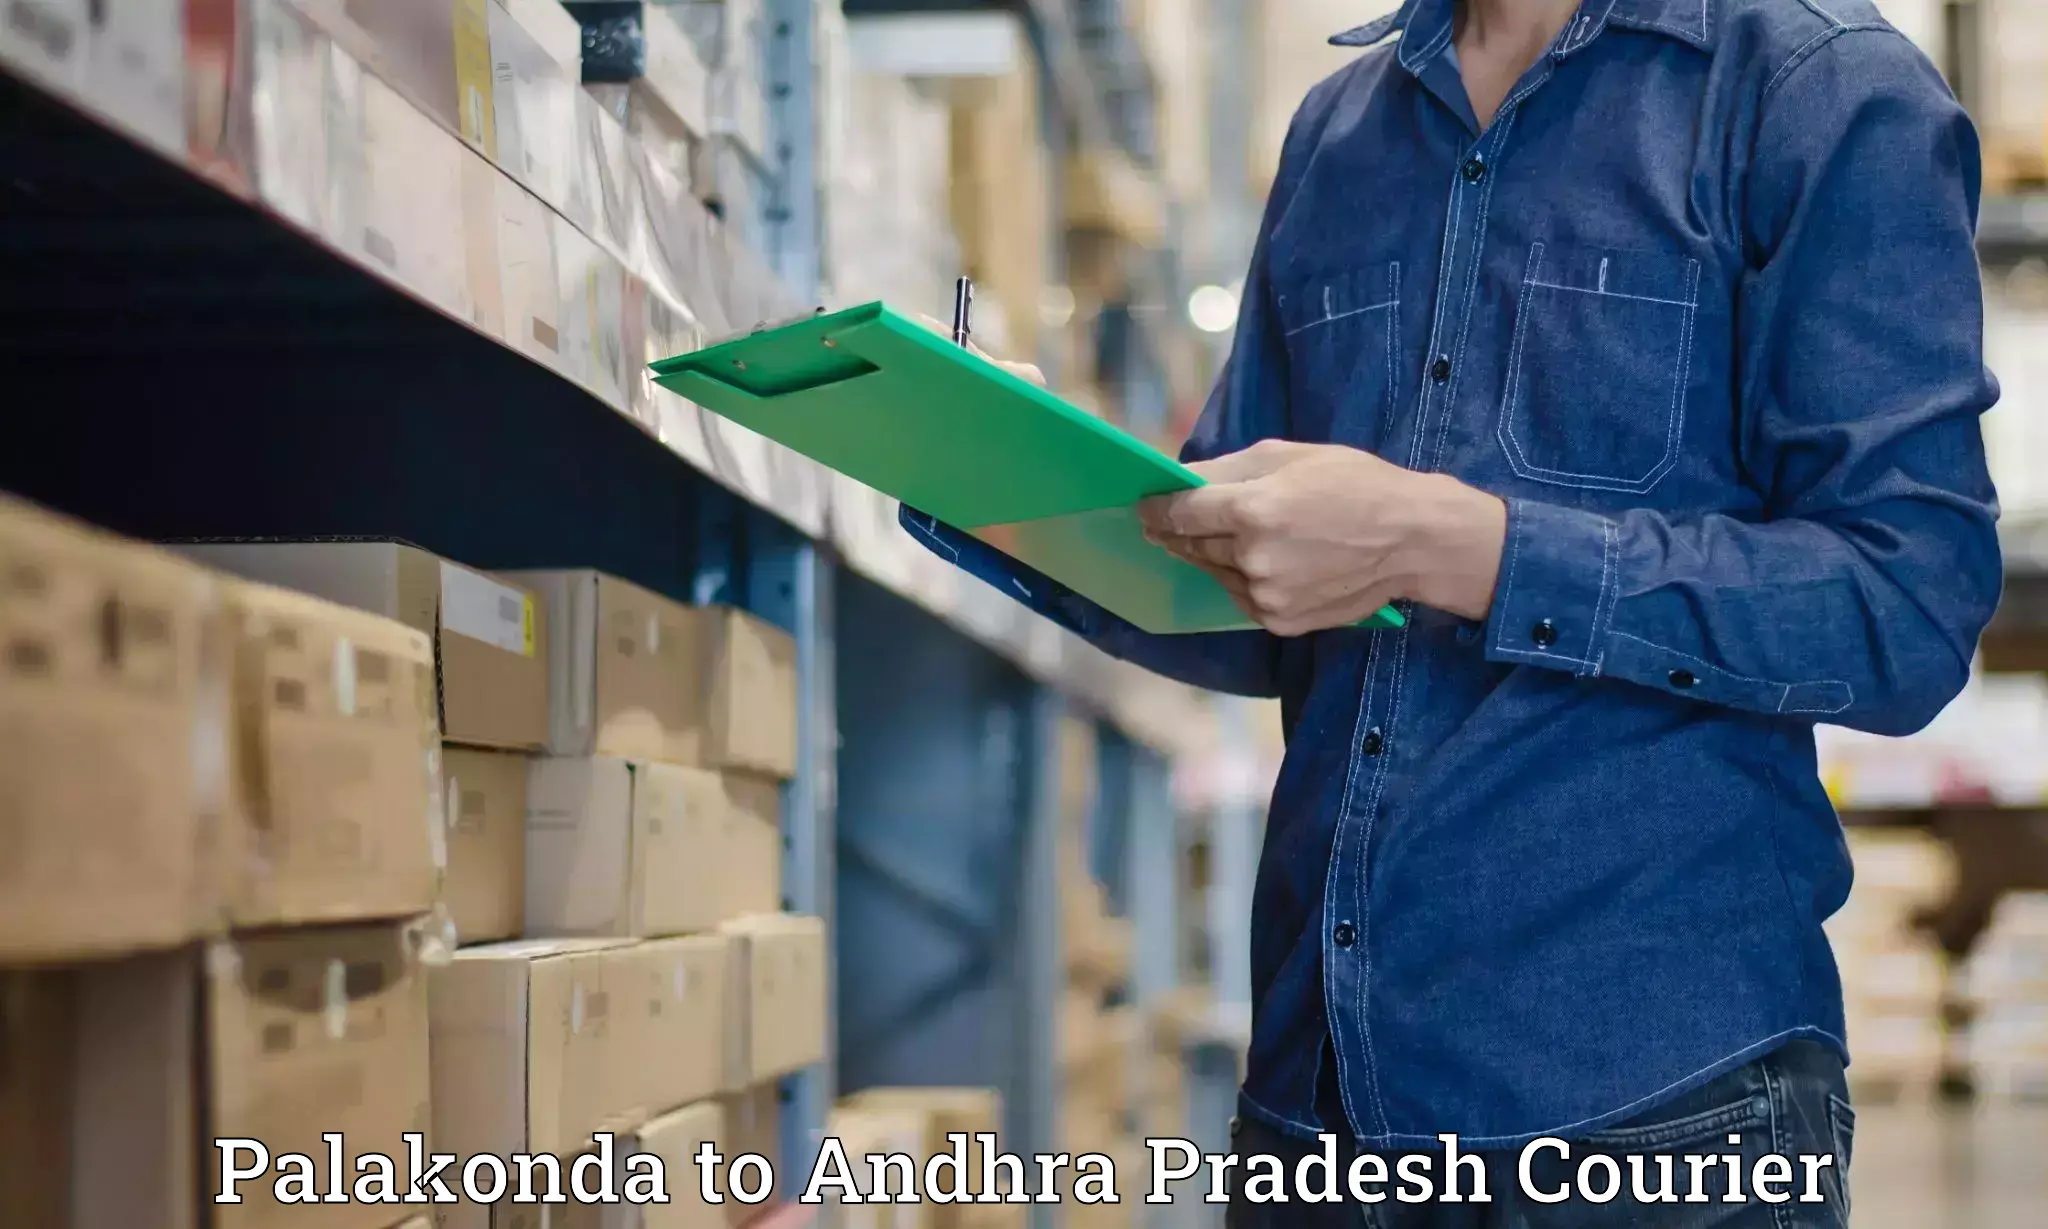 Automated parcel services Palakonda to Malikipuram